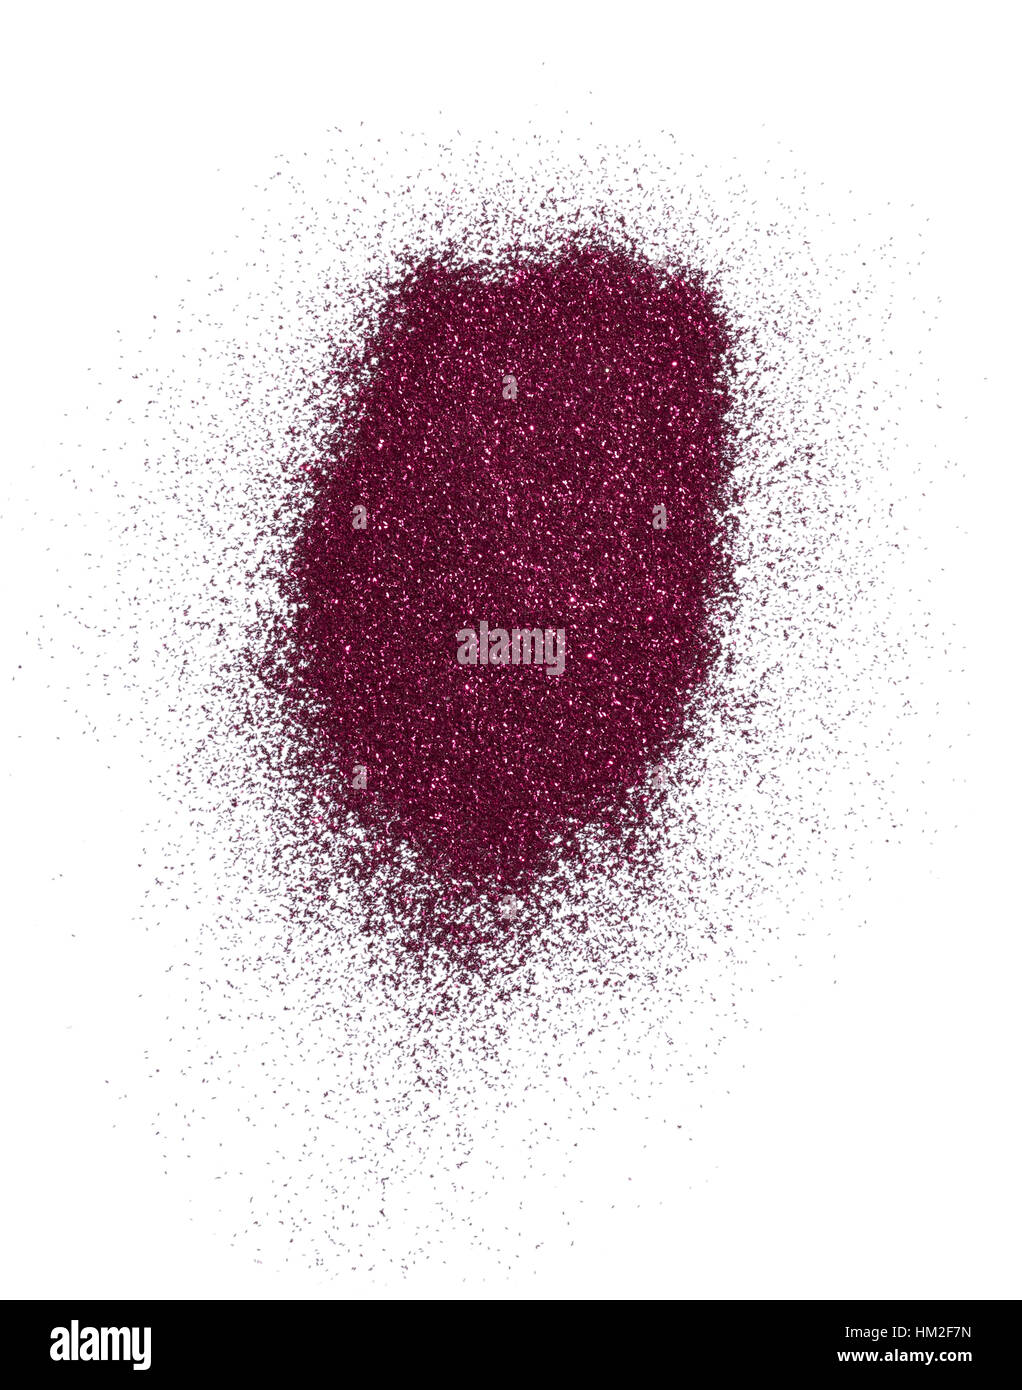 Un taglio fuori bellezza immagine di un campione di rosa metallizzato o polveri glitter in polvere. Foto Stock